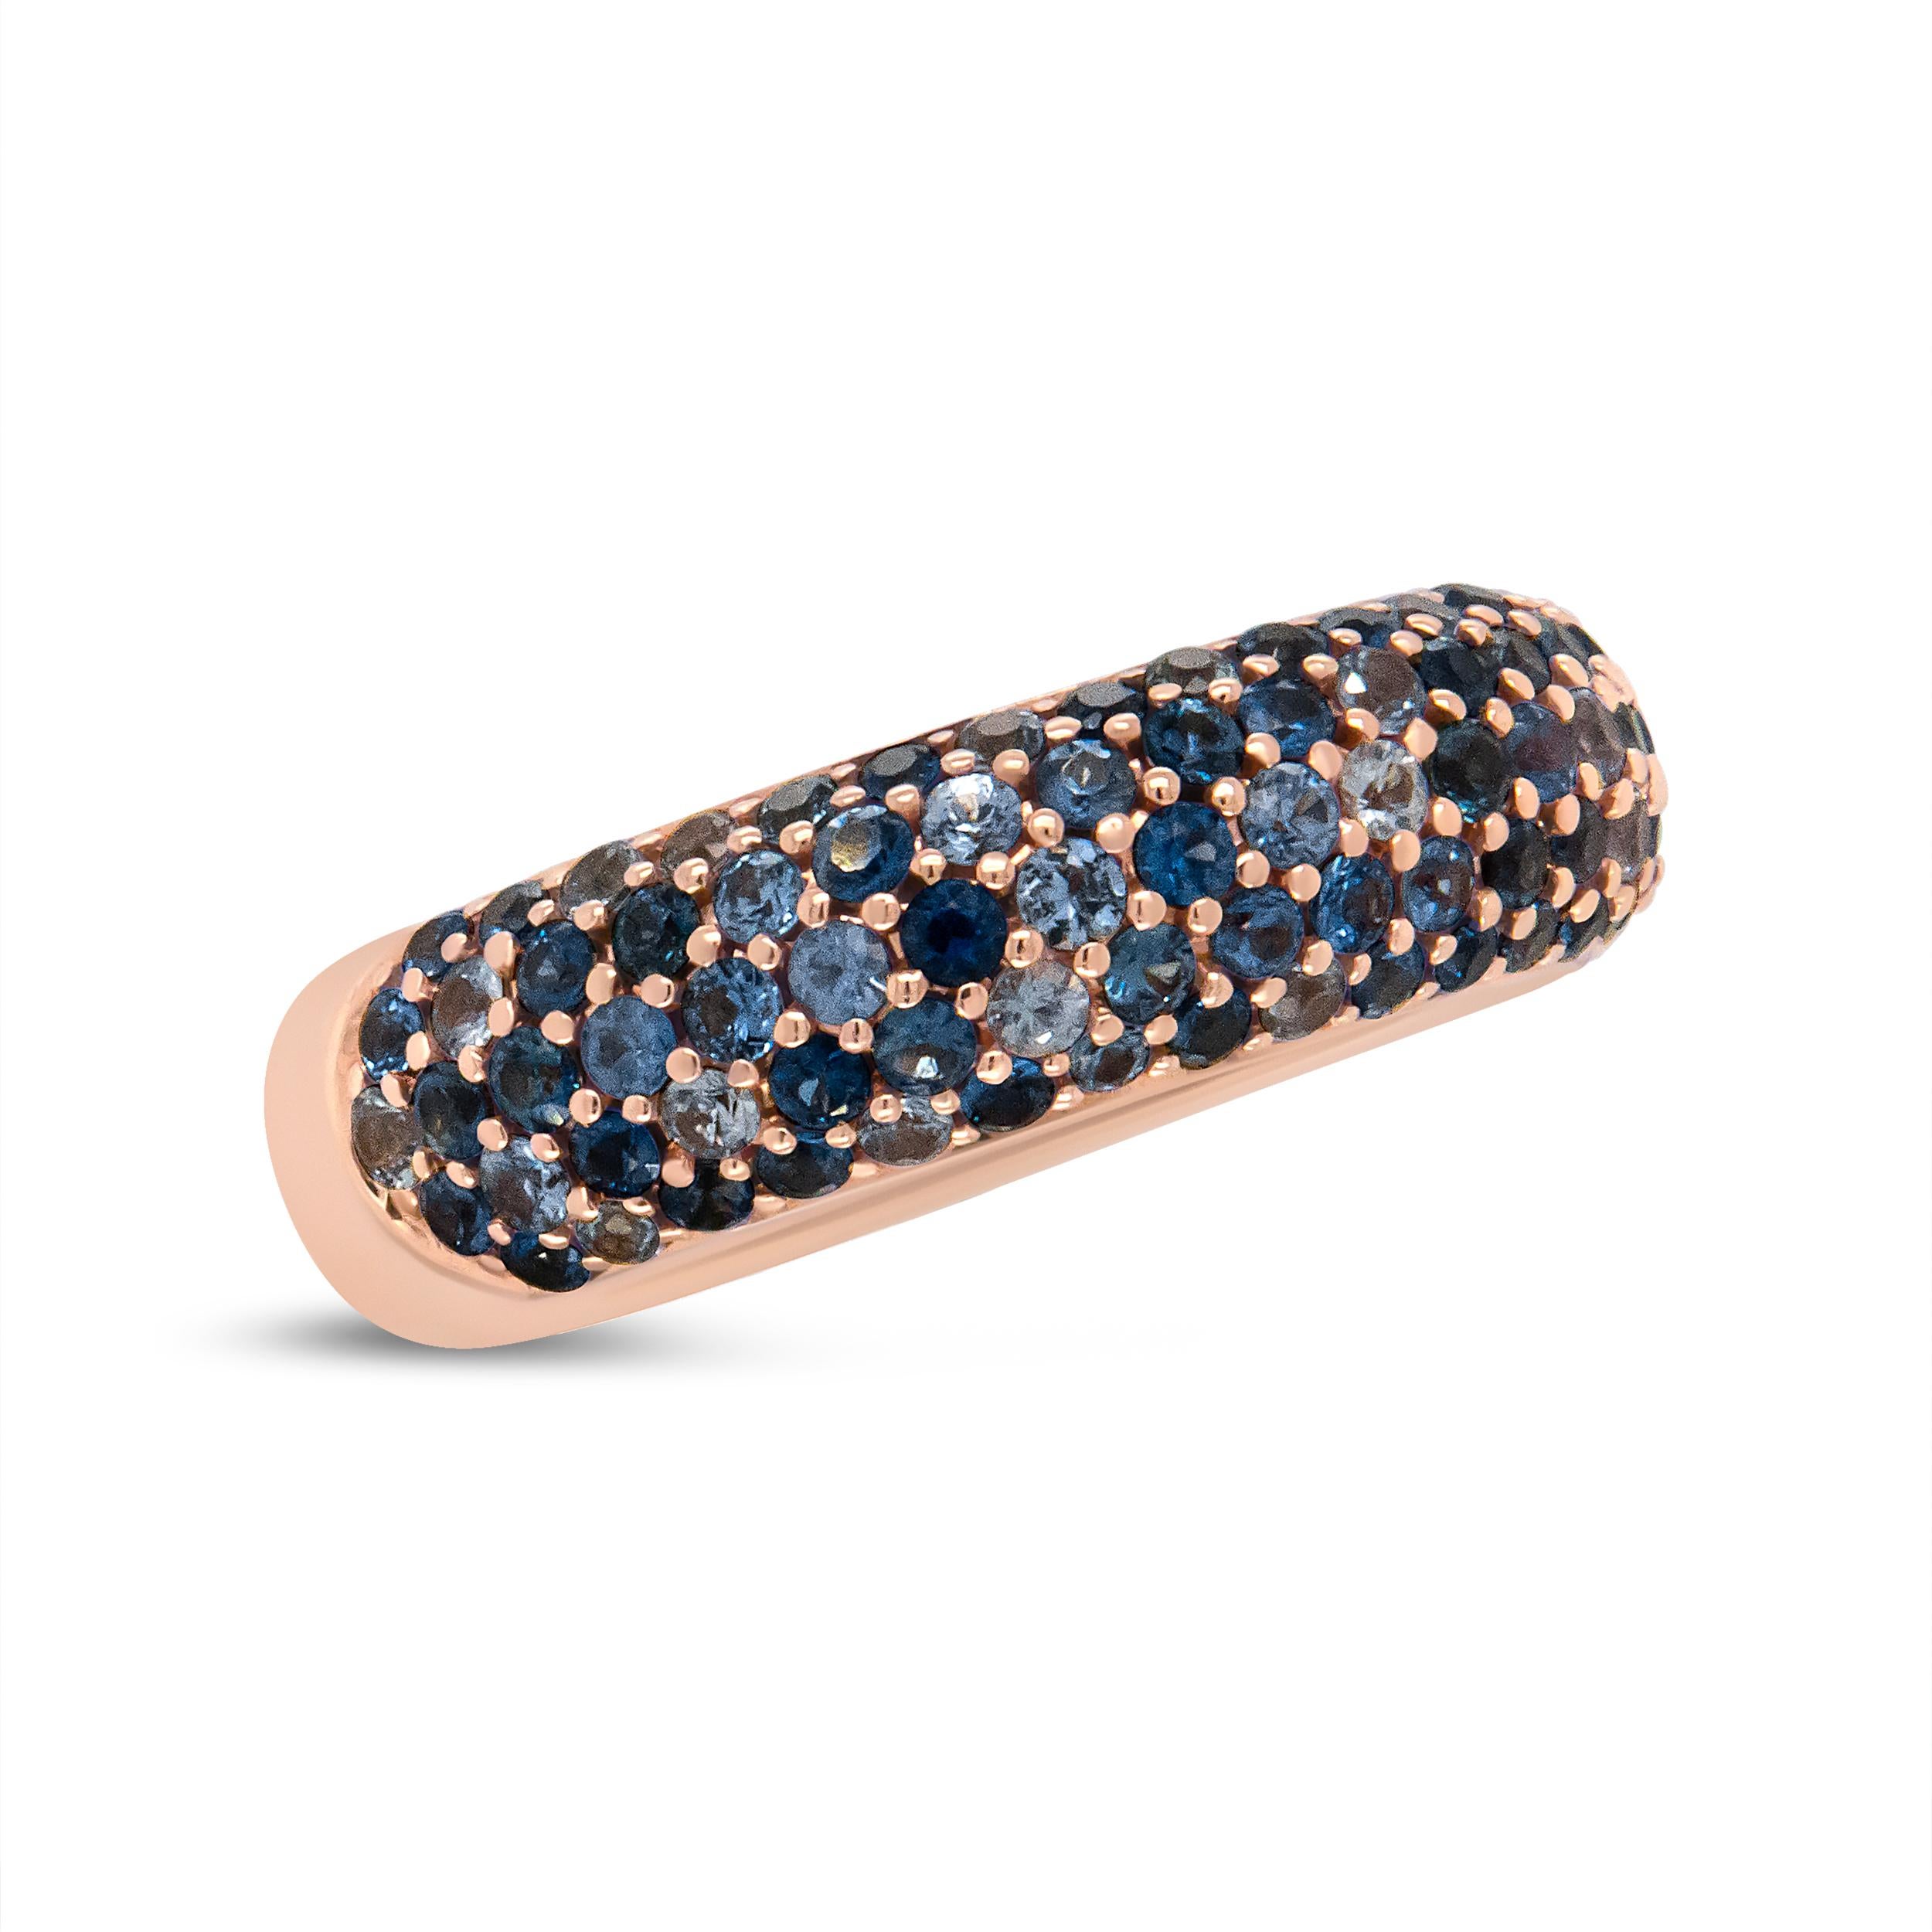 Pièce glamour rappelant l'océan, ce bracelet en or rose est orné d'étonnants saphirs de différents calibres aux tons bleus. Les pierres précieuses bleues nuancées sont embellies sur de l'or rose 18 carats luxueux pour un look global saisissant et